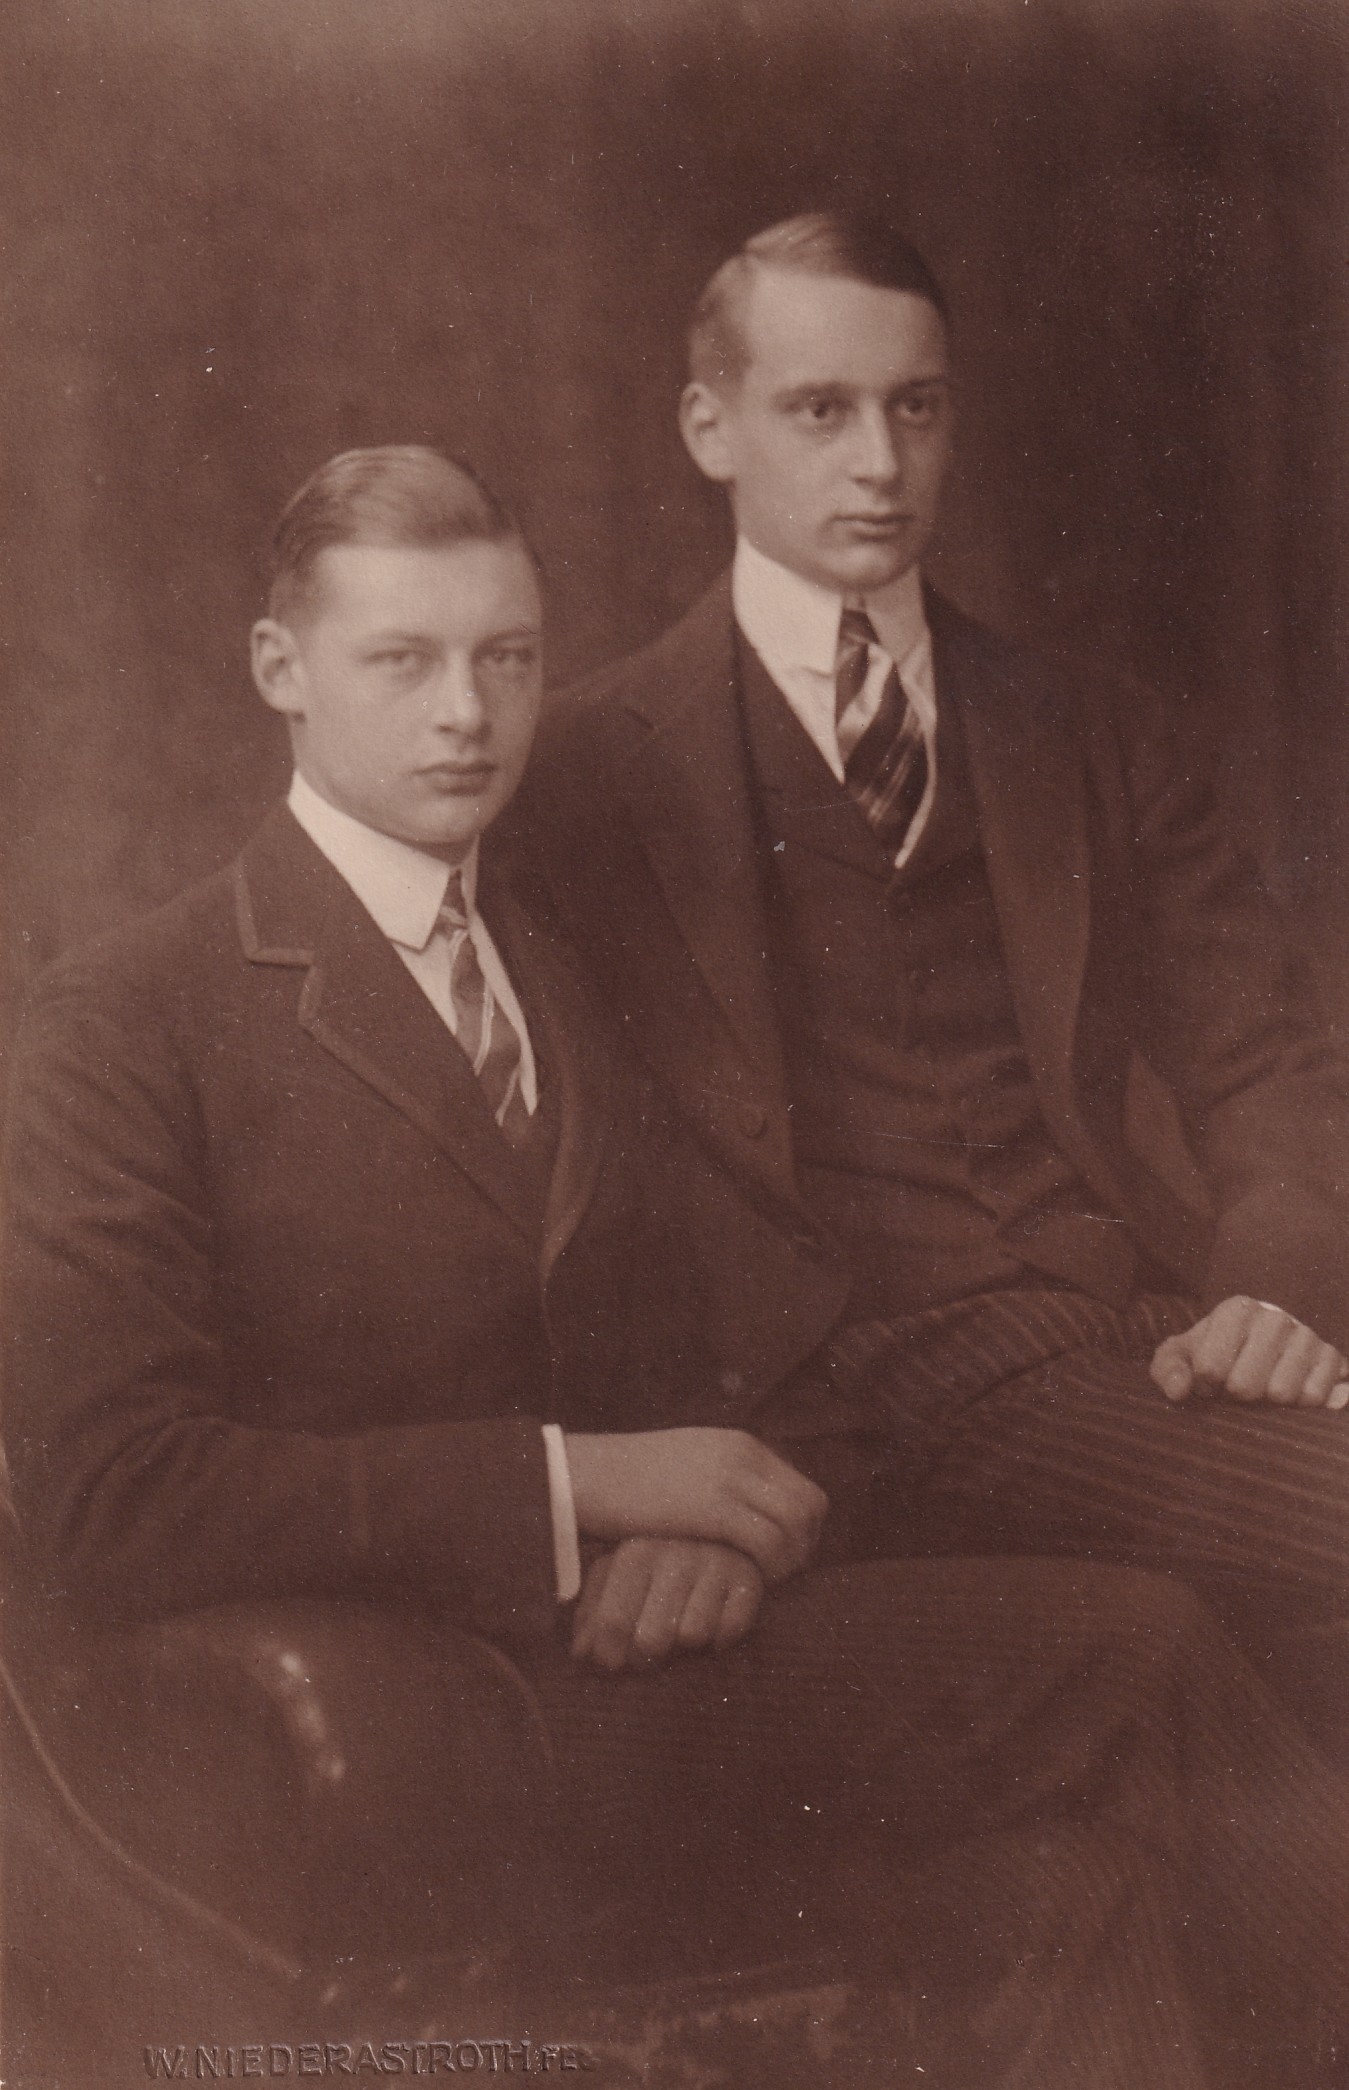 Bildpostkarte mit den beiden ältesten Söhnen des Kronprinzenpaares, 1924 (Schloß Wernigerode GmbH RR-F)